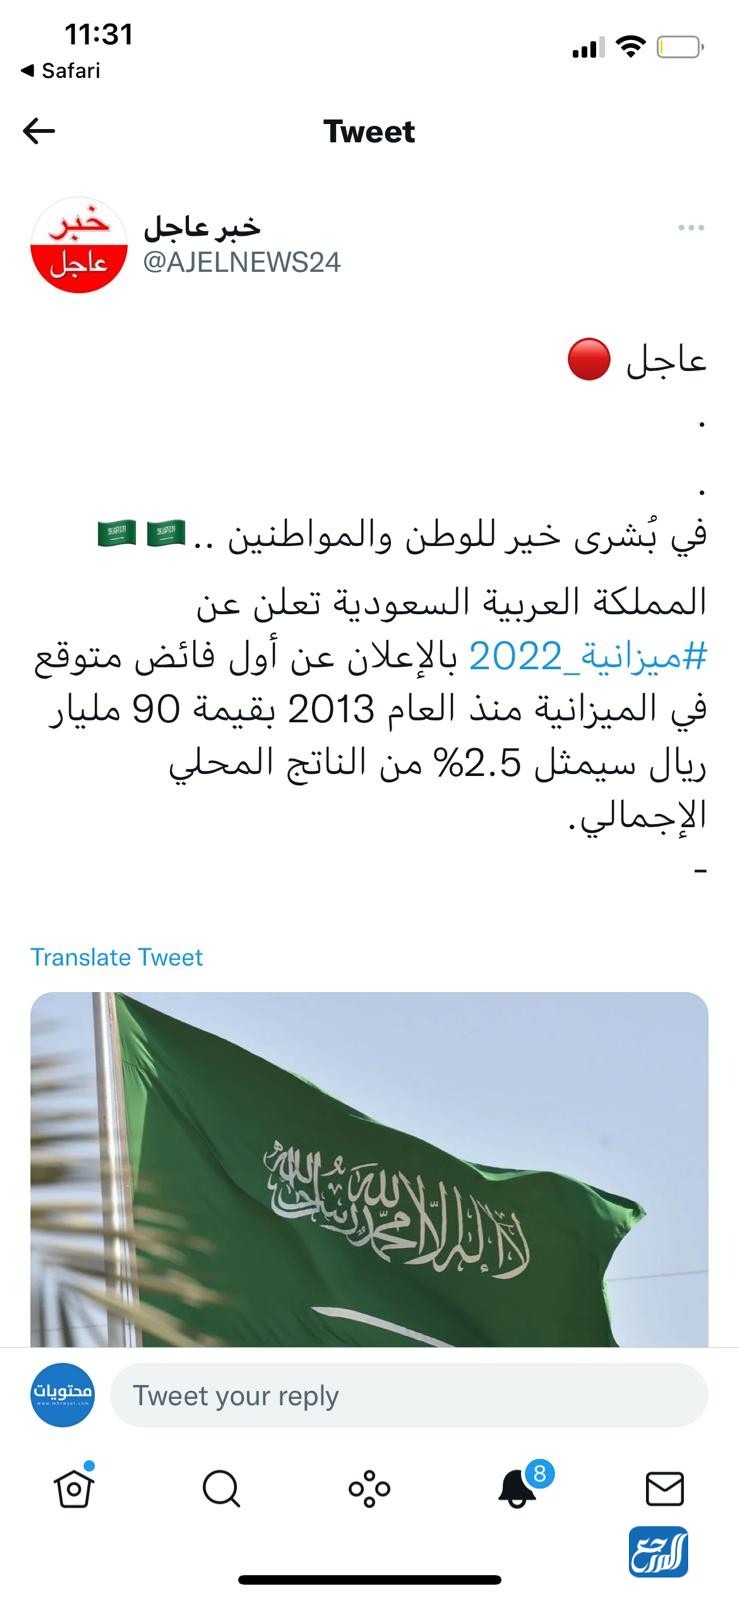 فائض العام القادم من الميزانية العامة للمملكة العربية السعودية